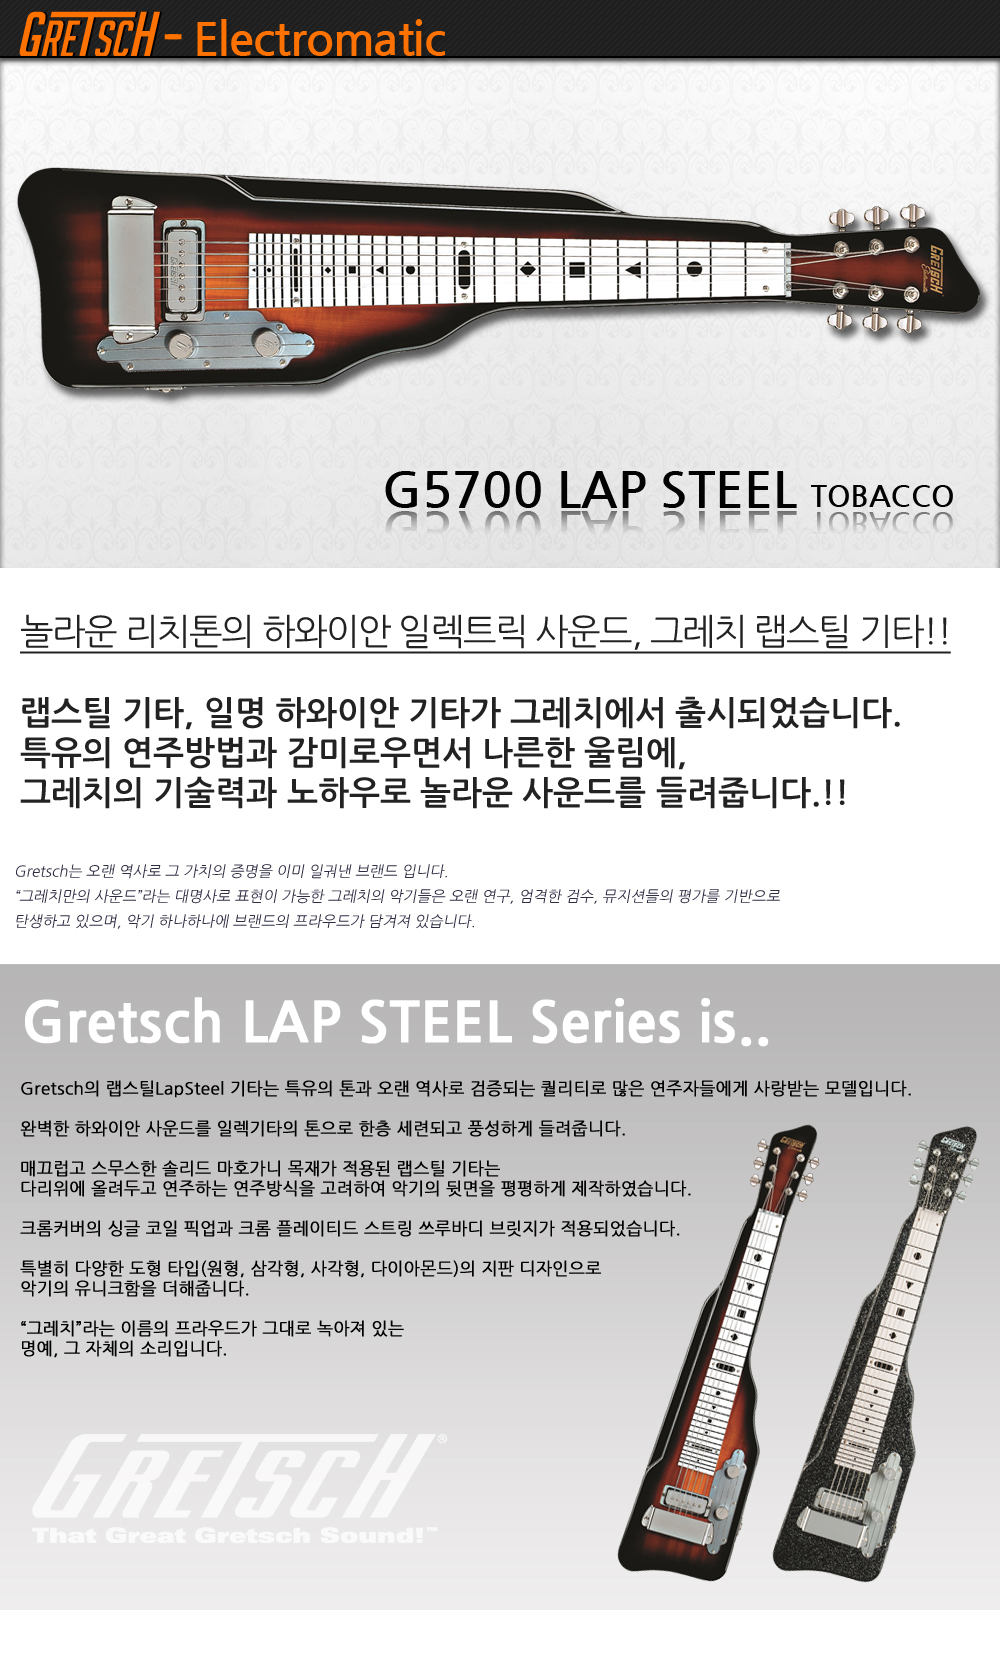 Gretsch-G5700-LapSteel-Tobacco_1_135012.jpg